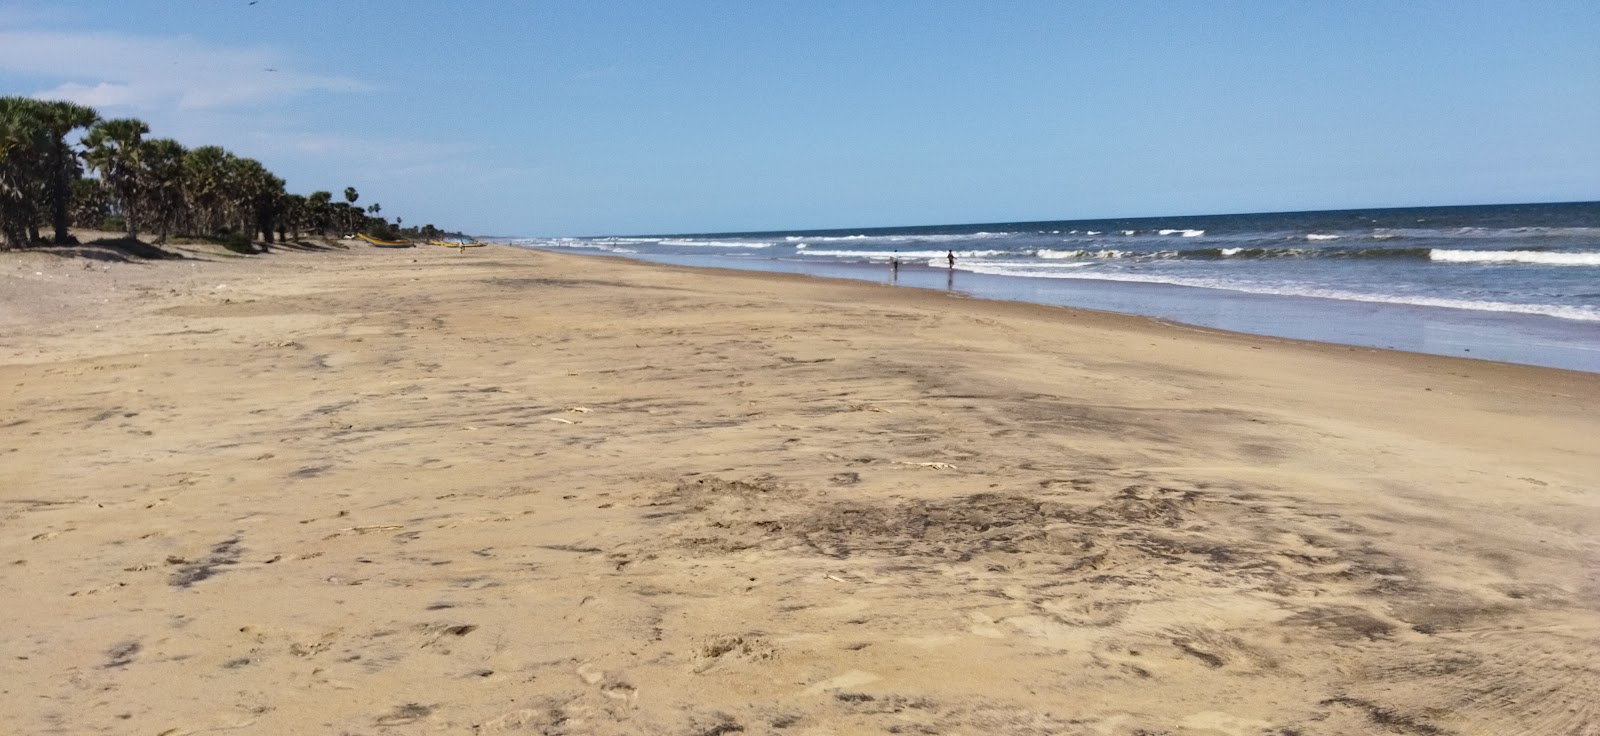 Foto di Yellayya peta Beach con una superficie del sabbia luminosa